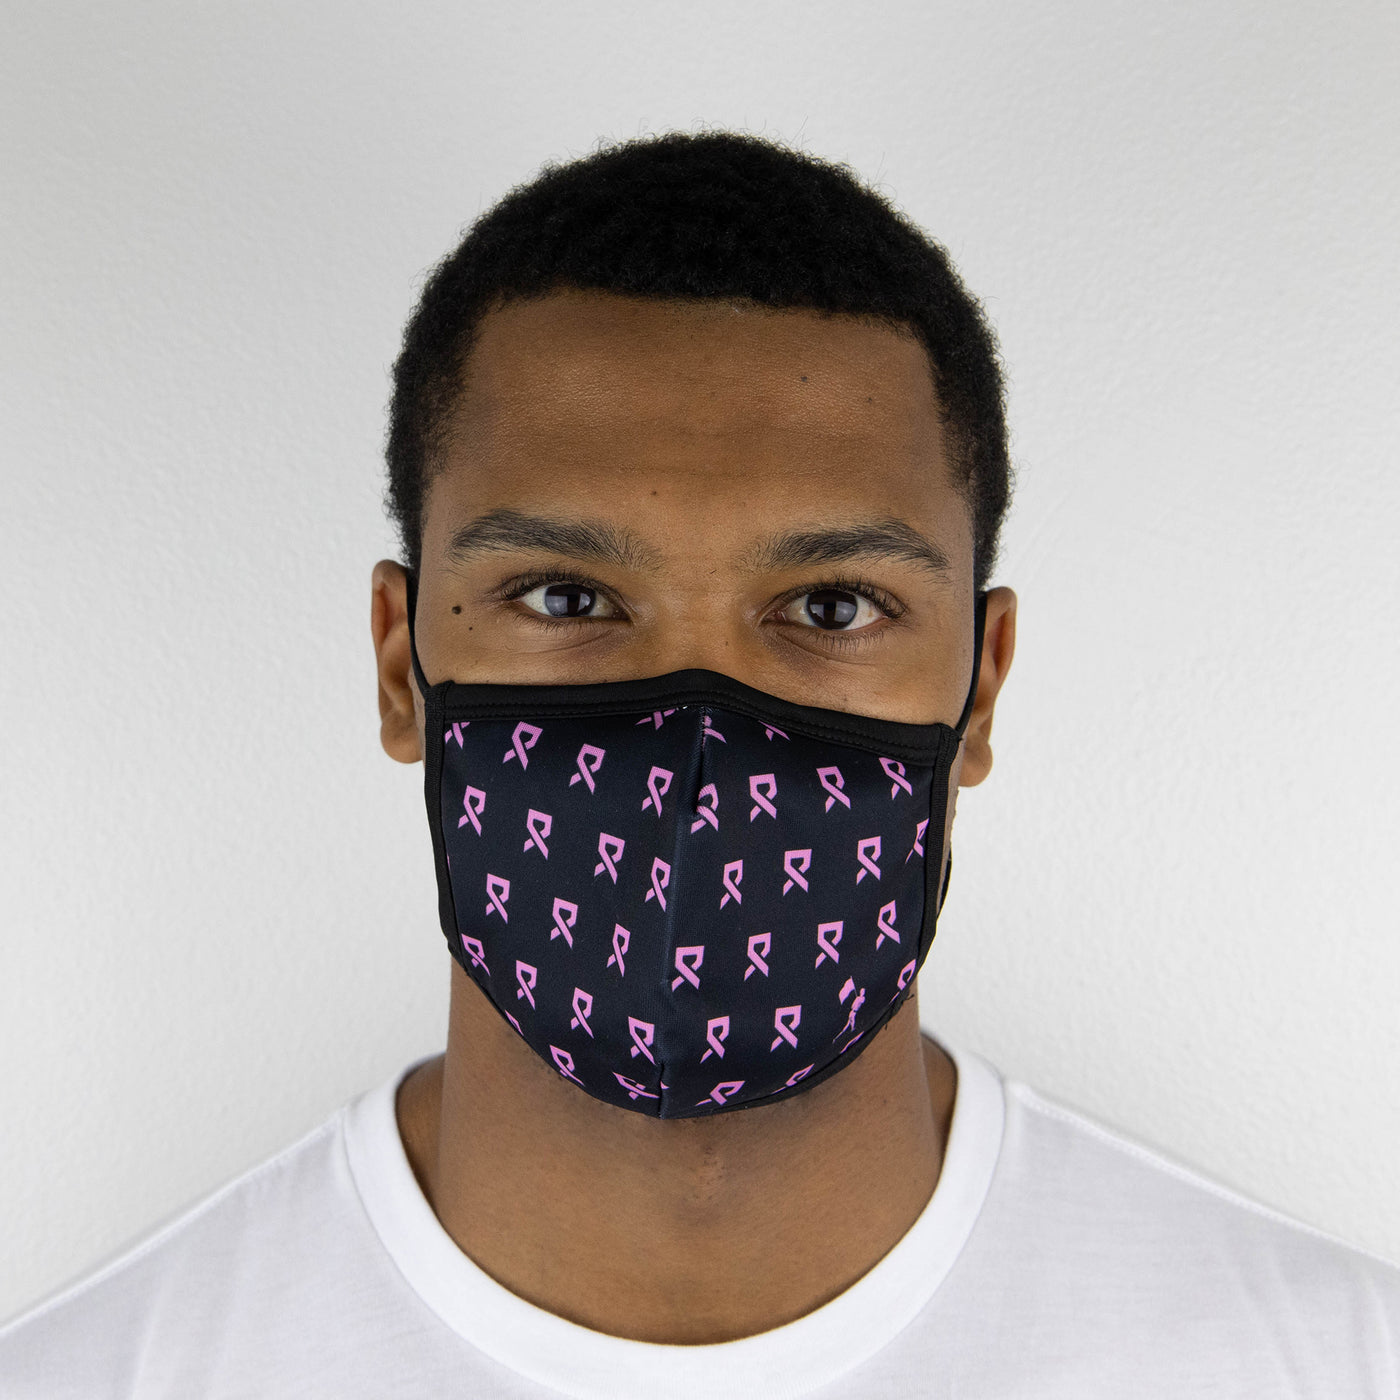 ラリーリボンピンクファッションマスク - ユニセックス